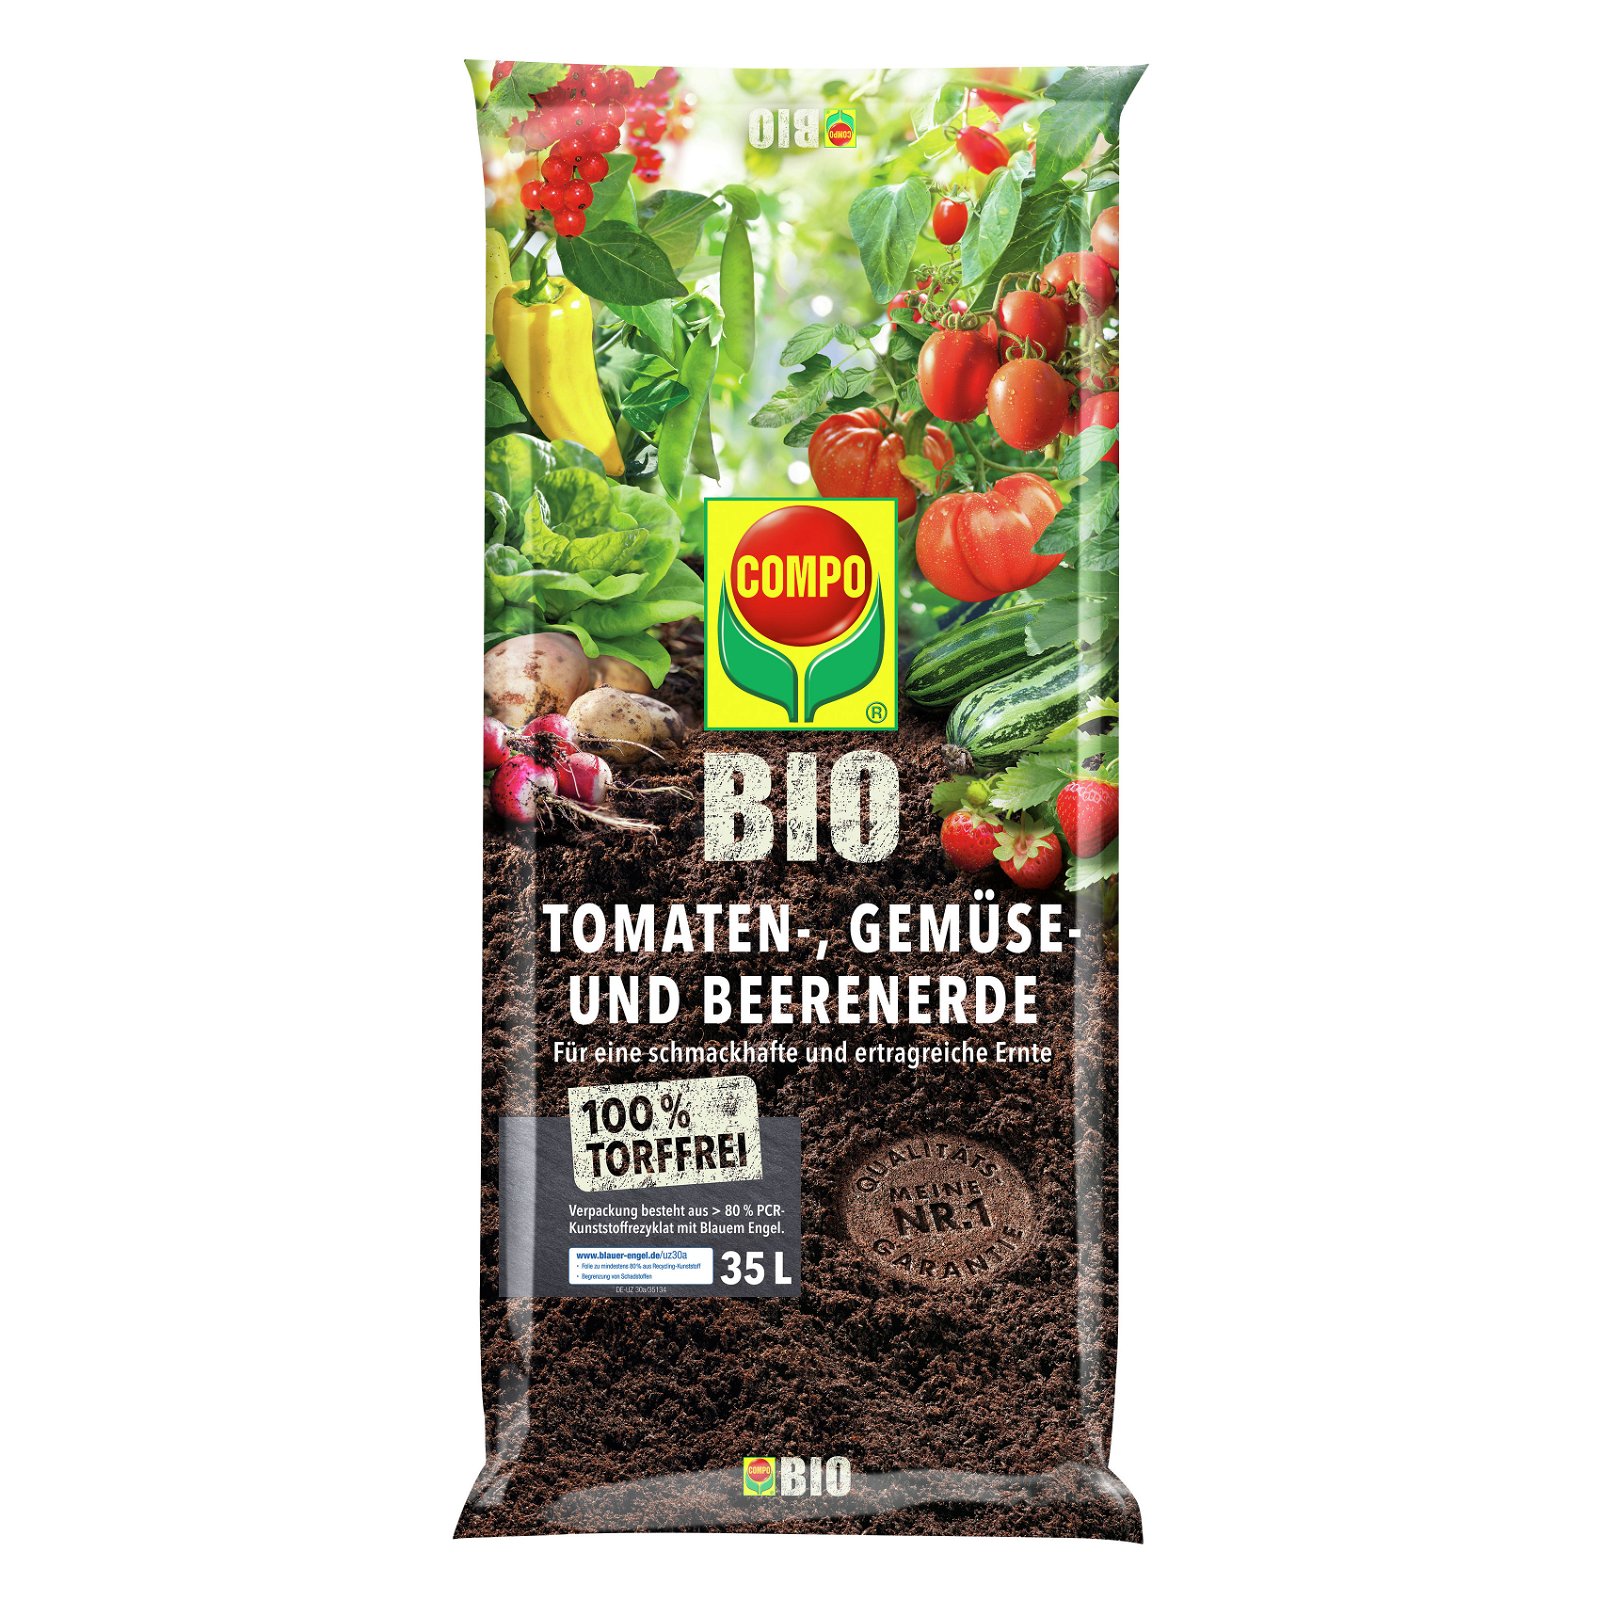 Compo Bio Tomaten-, Gemüse u. Beerenerde torffrei, 35 Liter